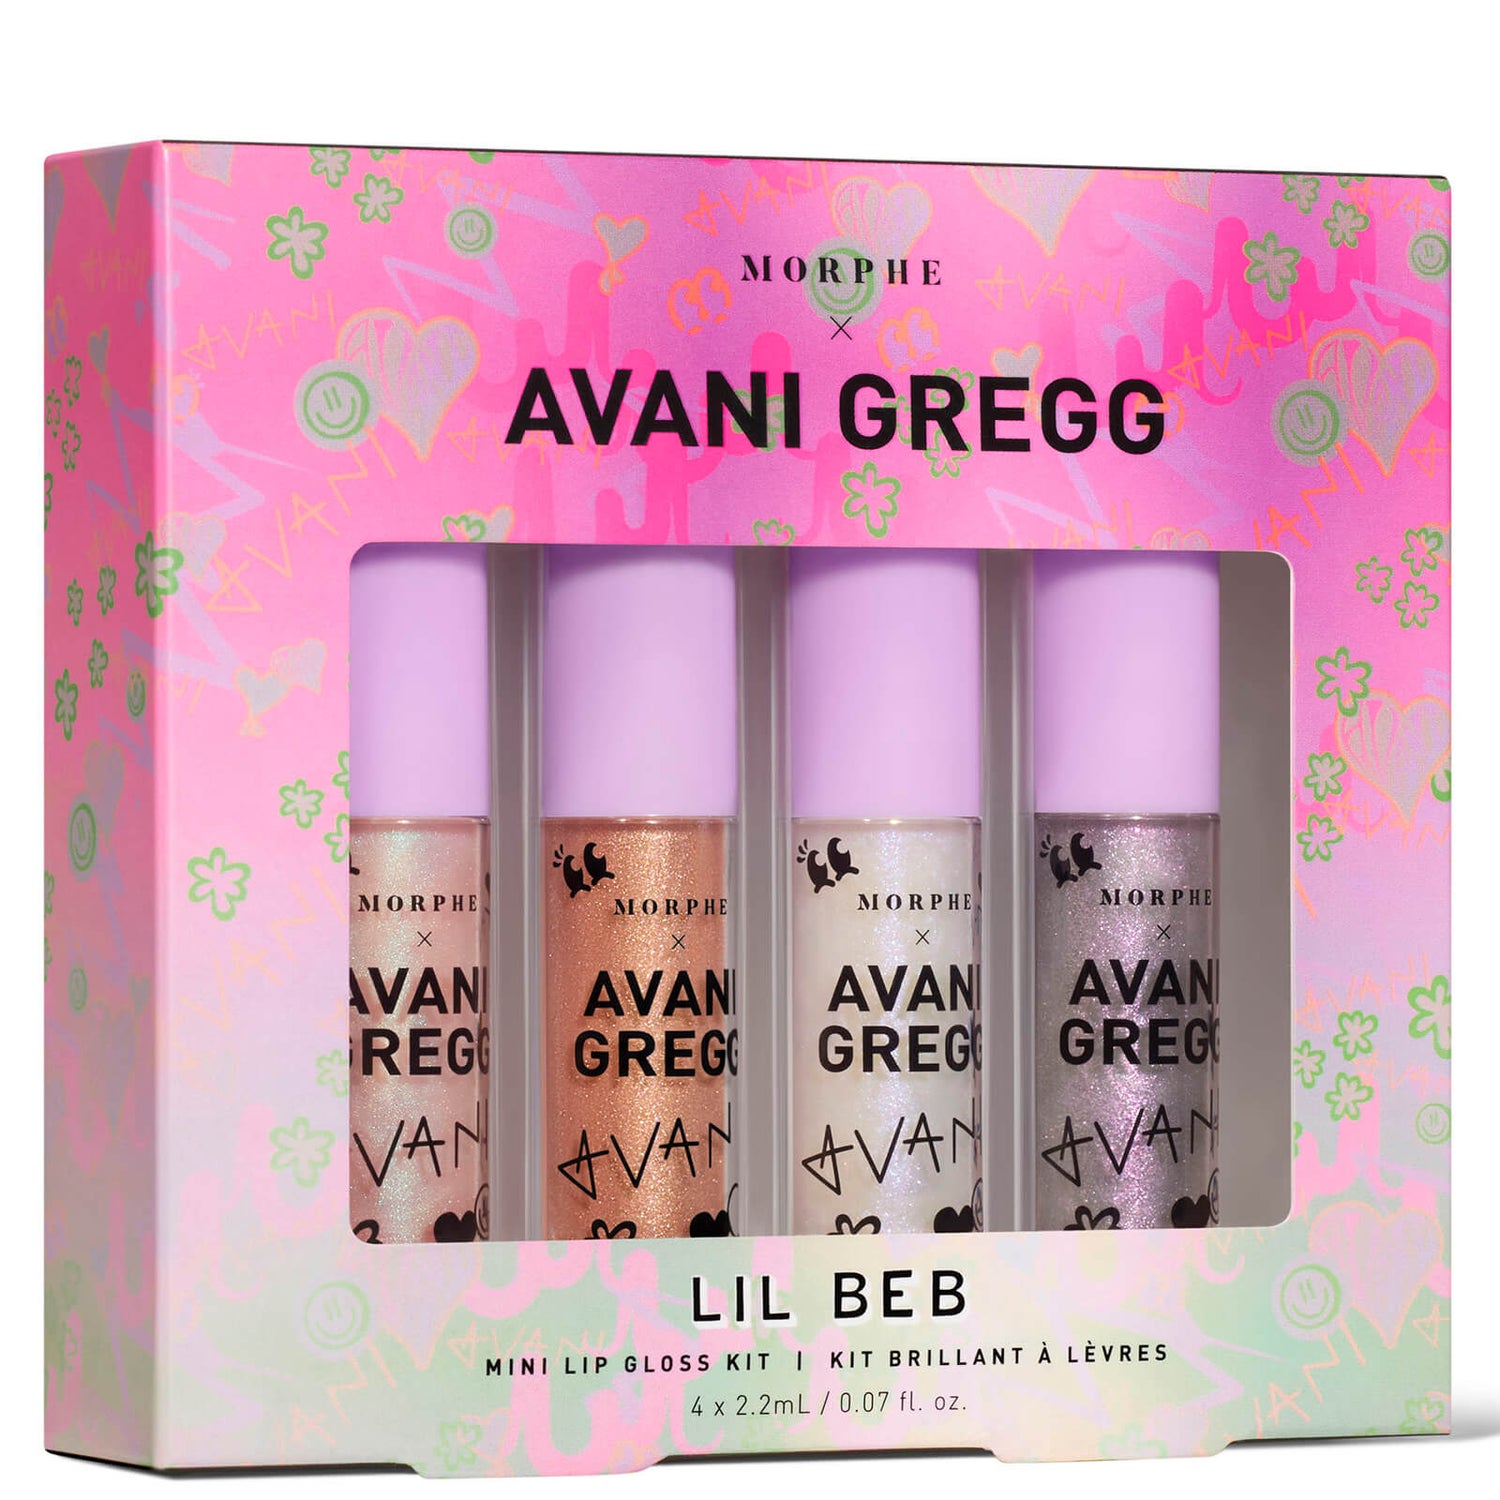 Morphe X Avani Gregg - Lil Beb Mini Lipgloss Kit